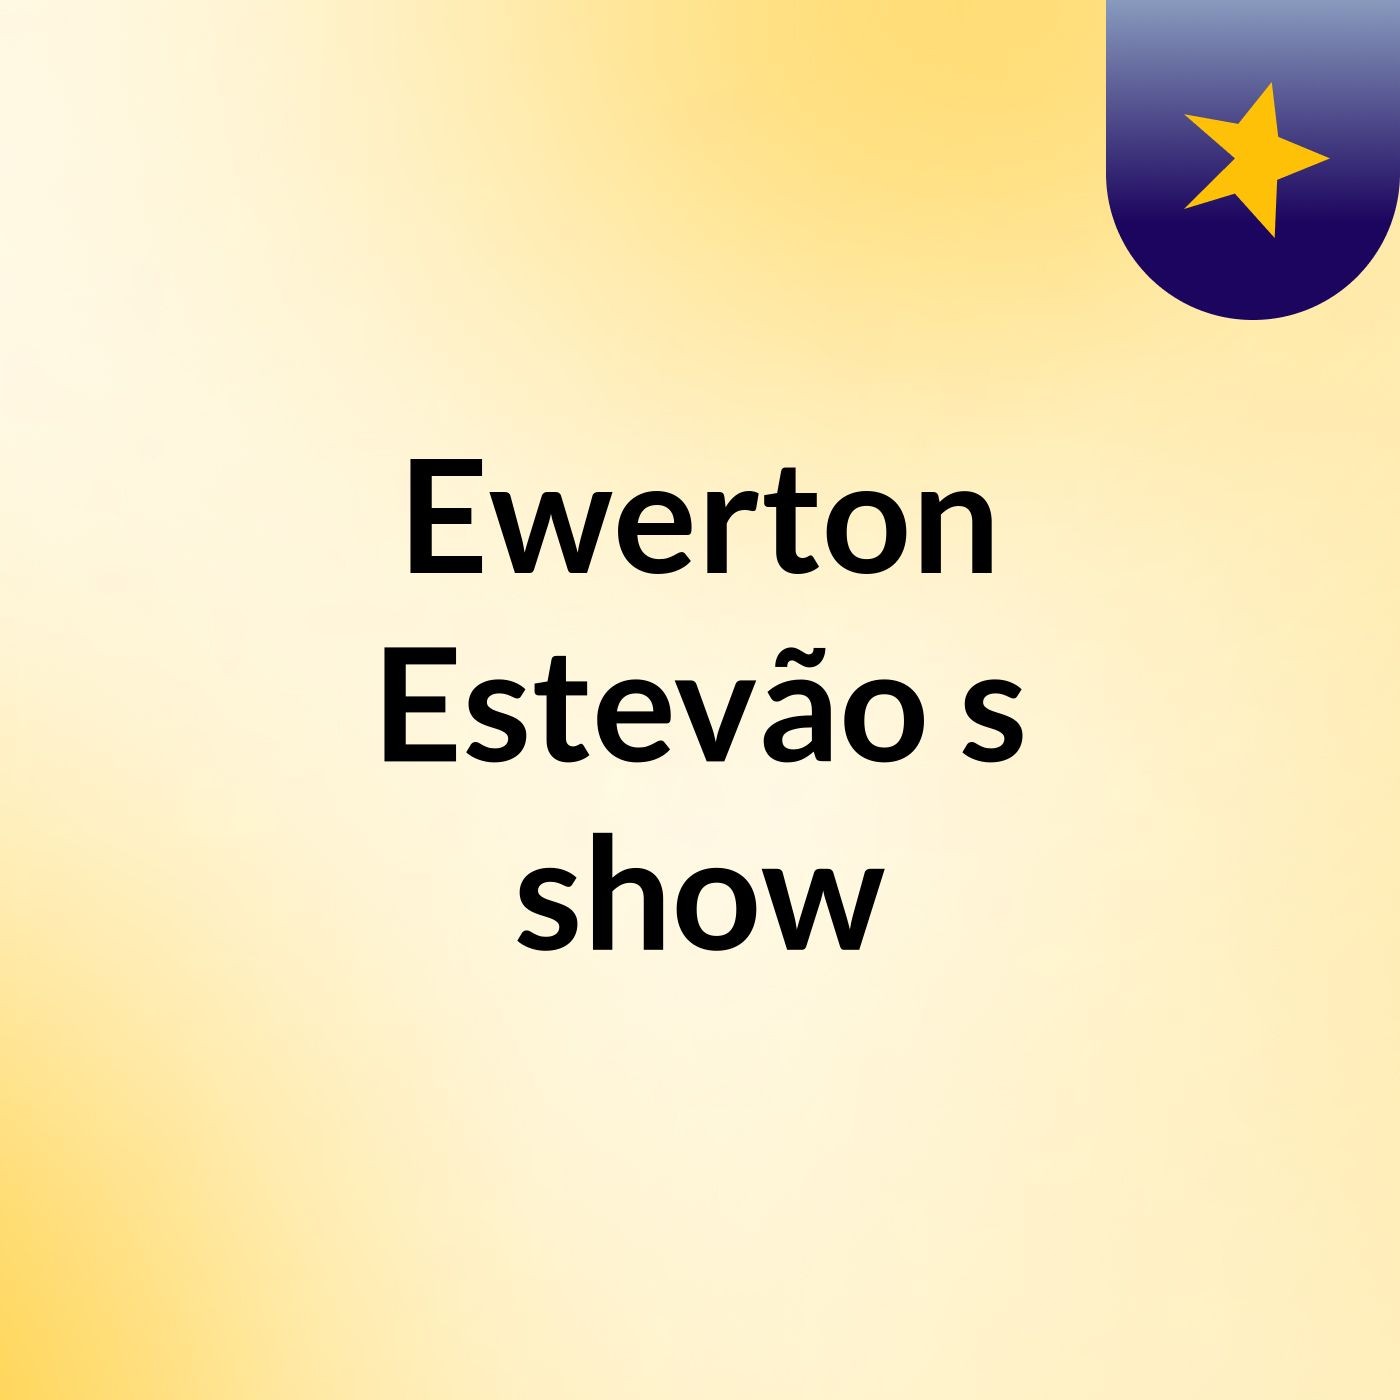 Ewerton Estevão's show